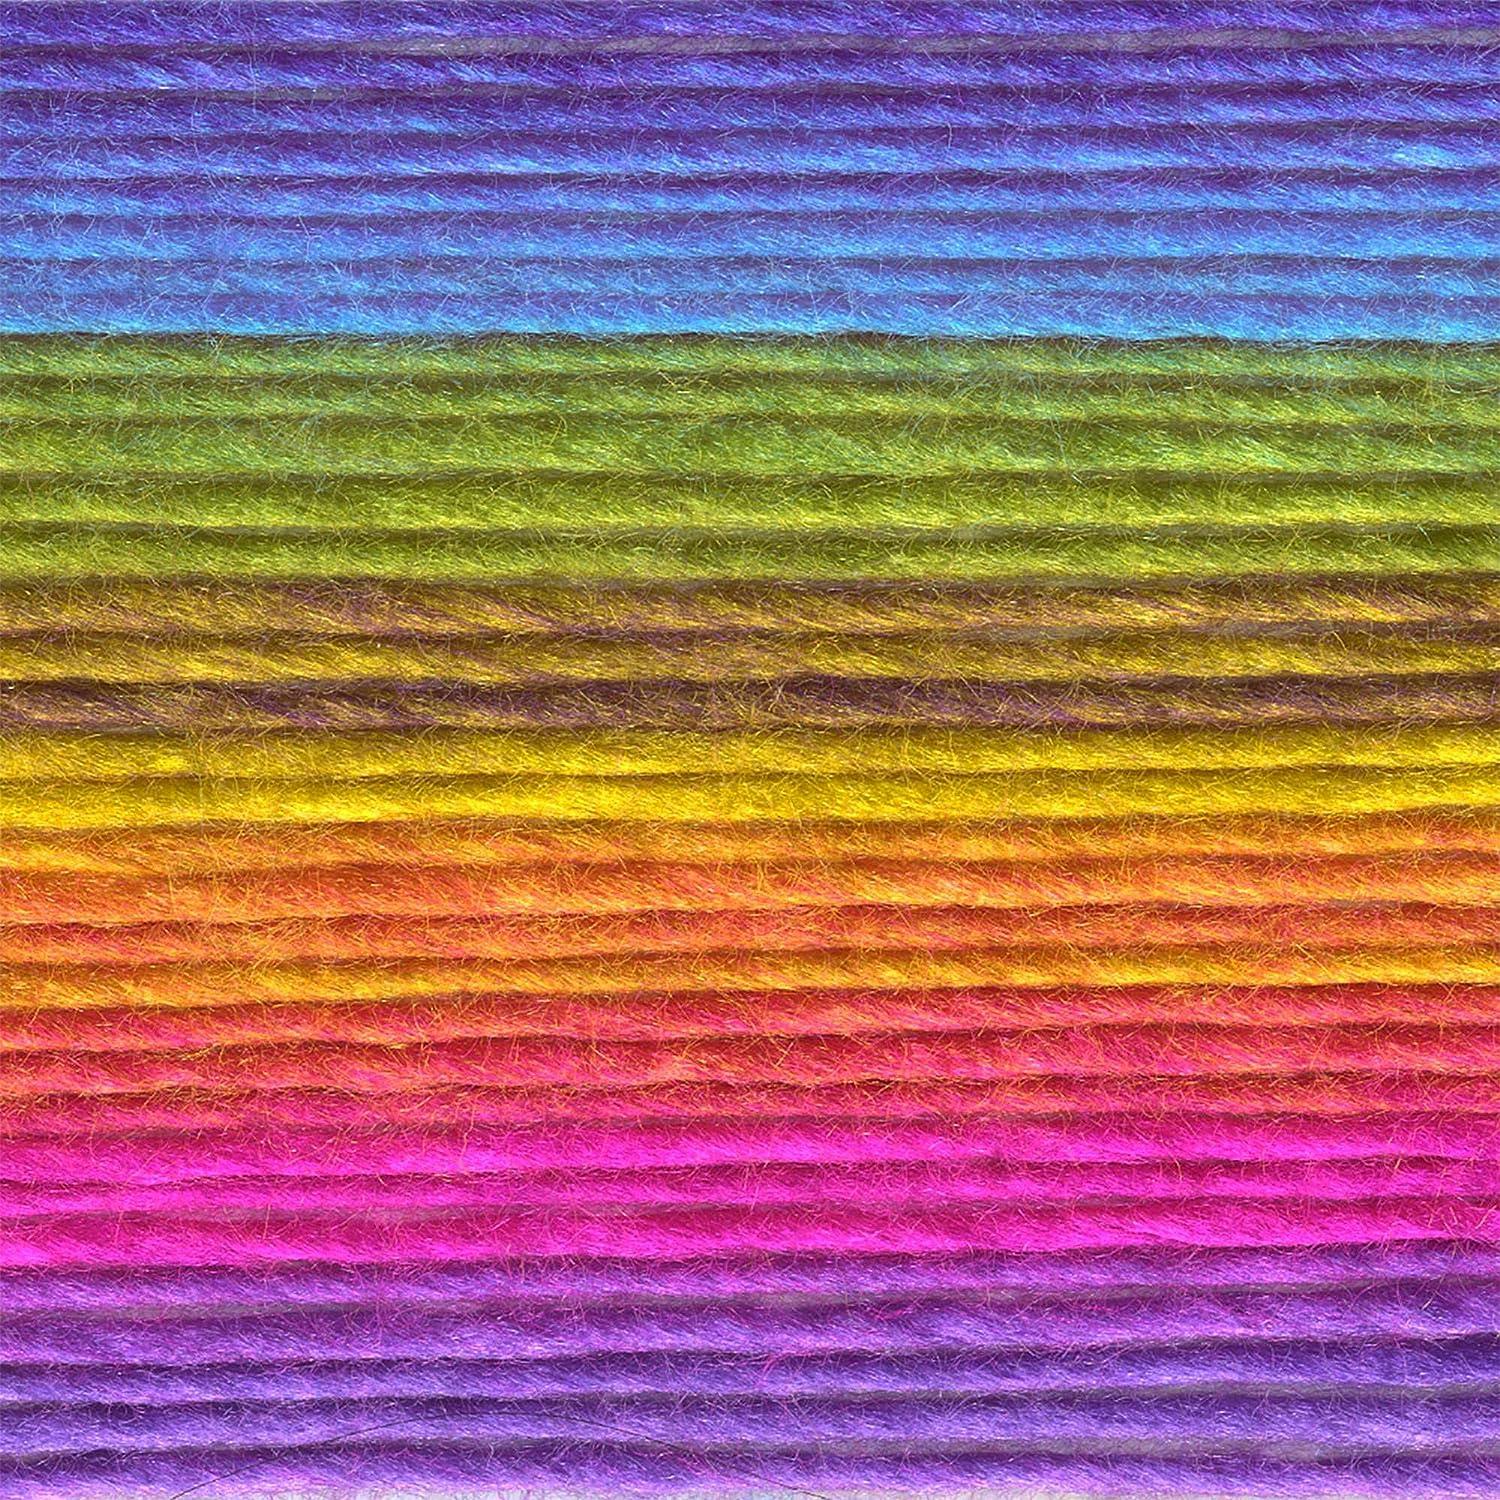 Multicolor Yarn 